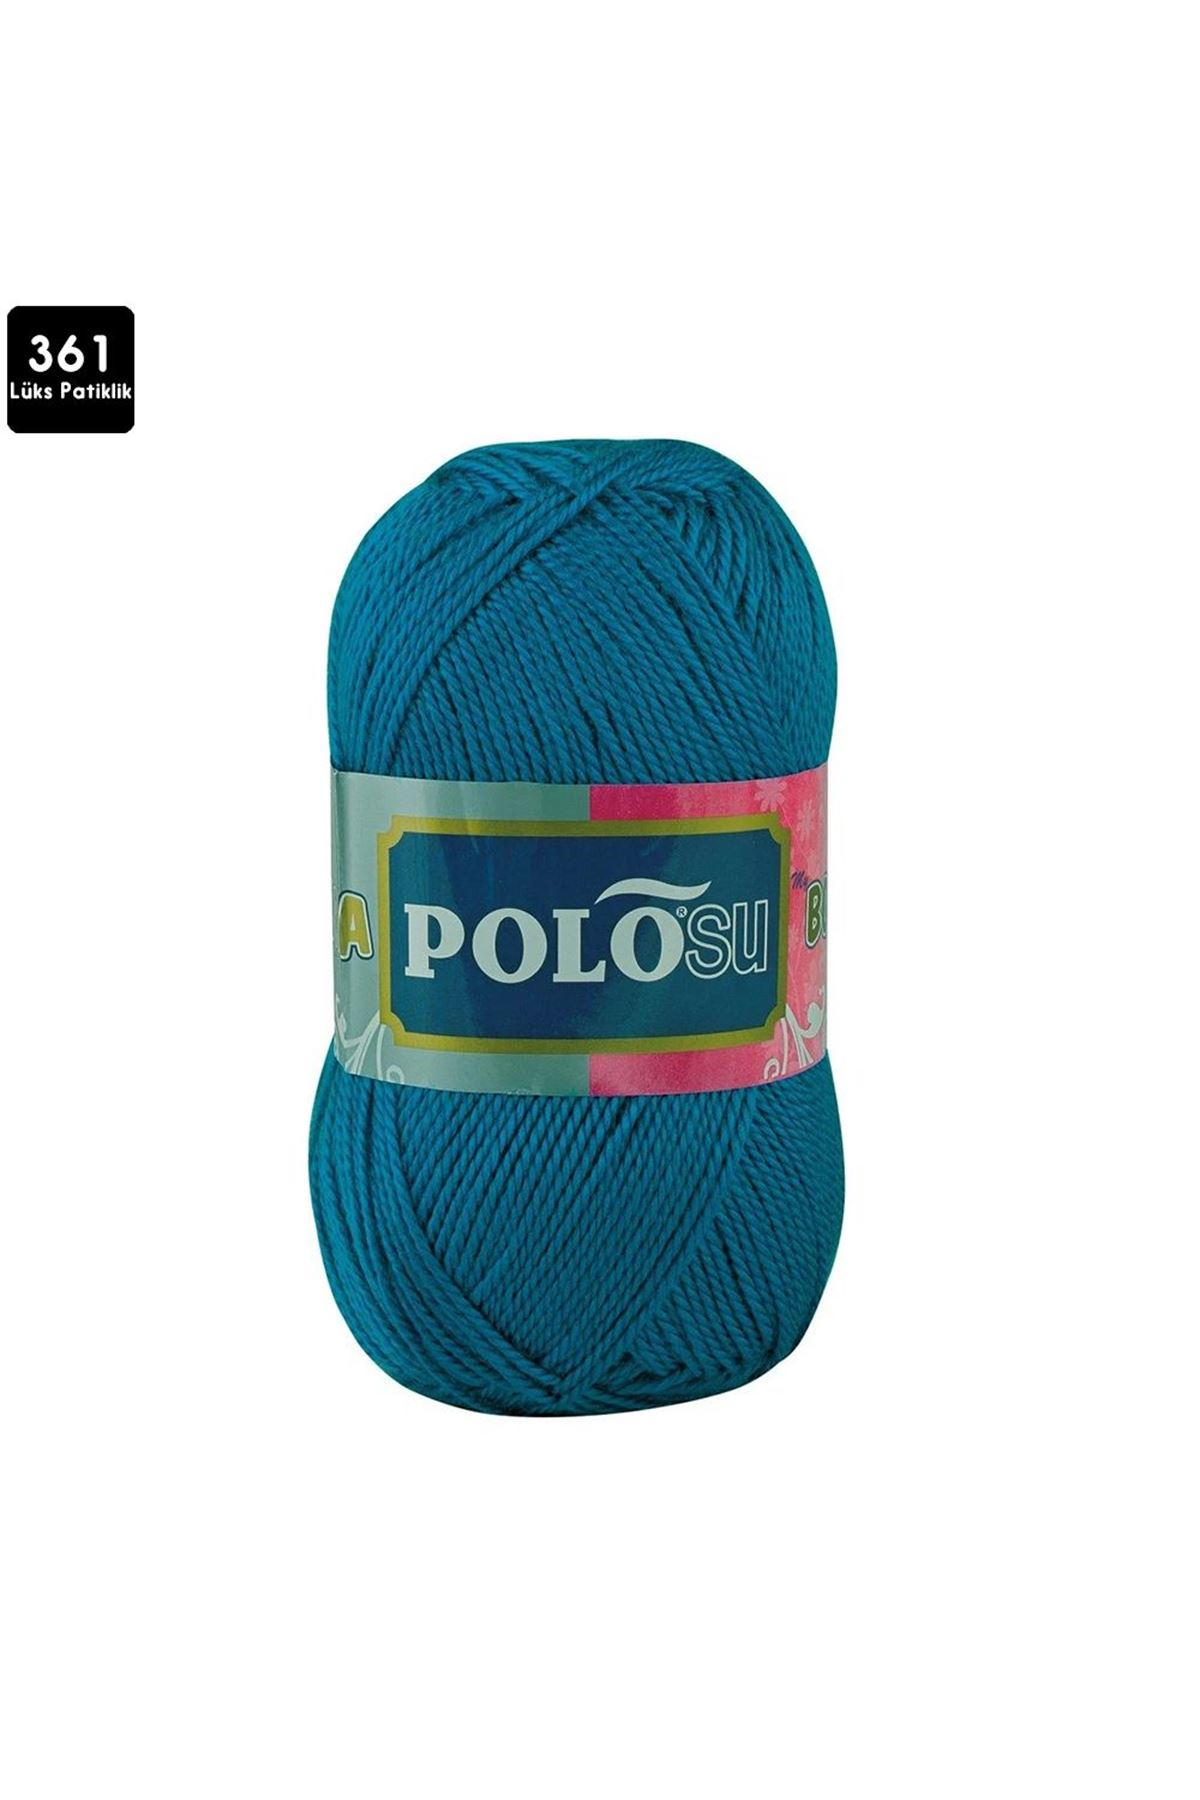 PoloSU Lüks Patiklik Renk No:361